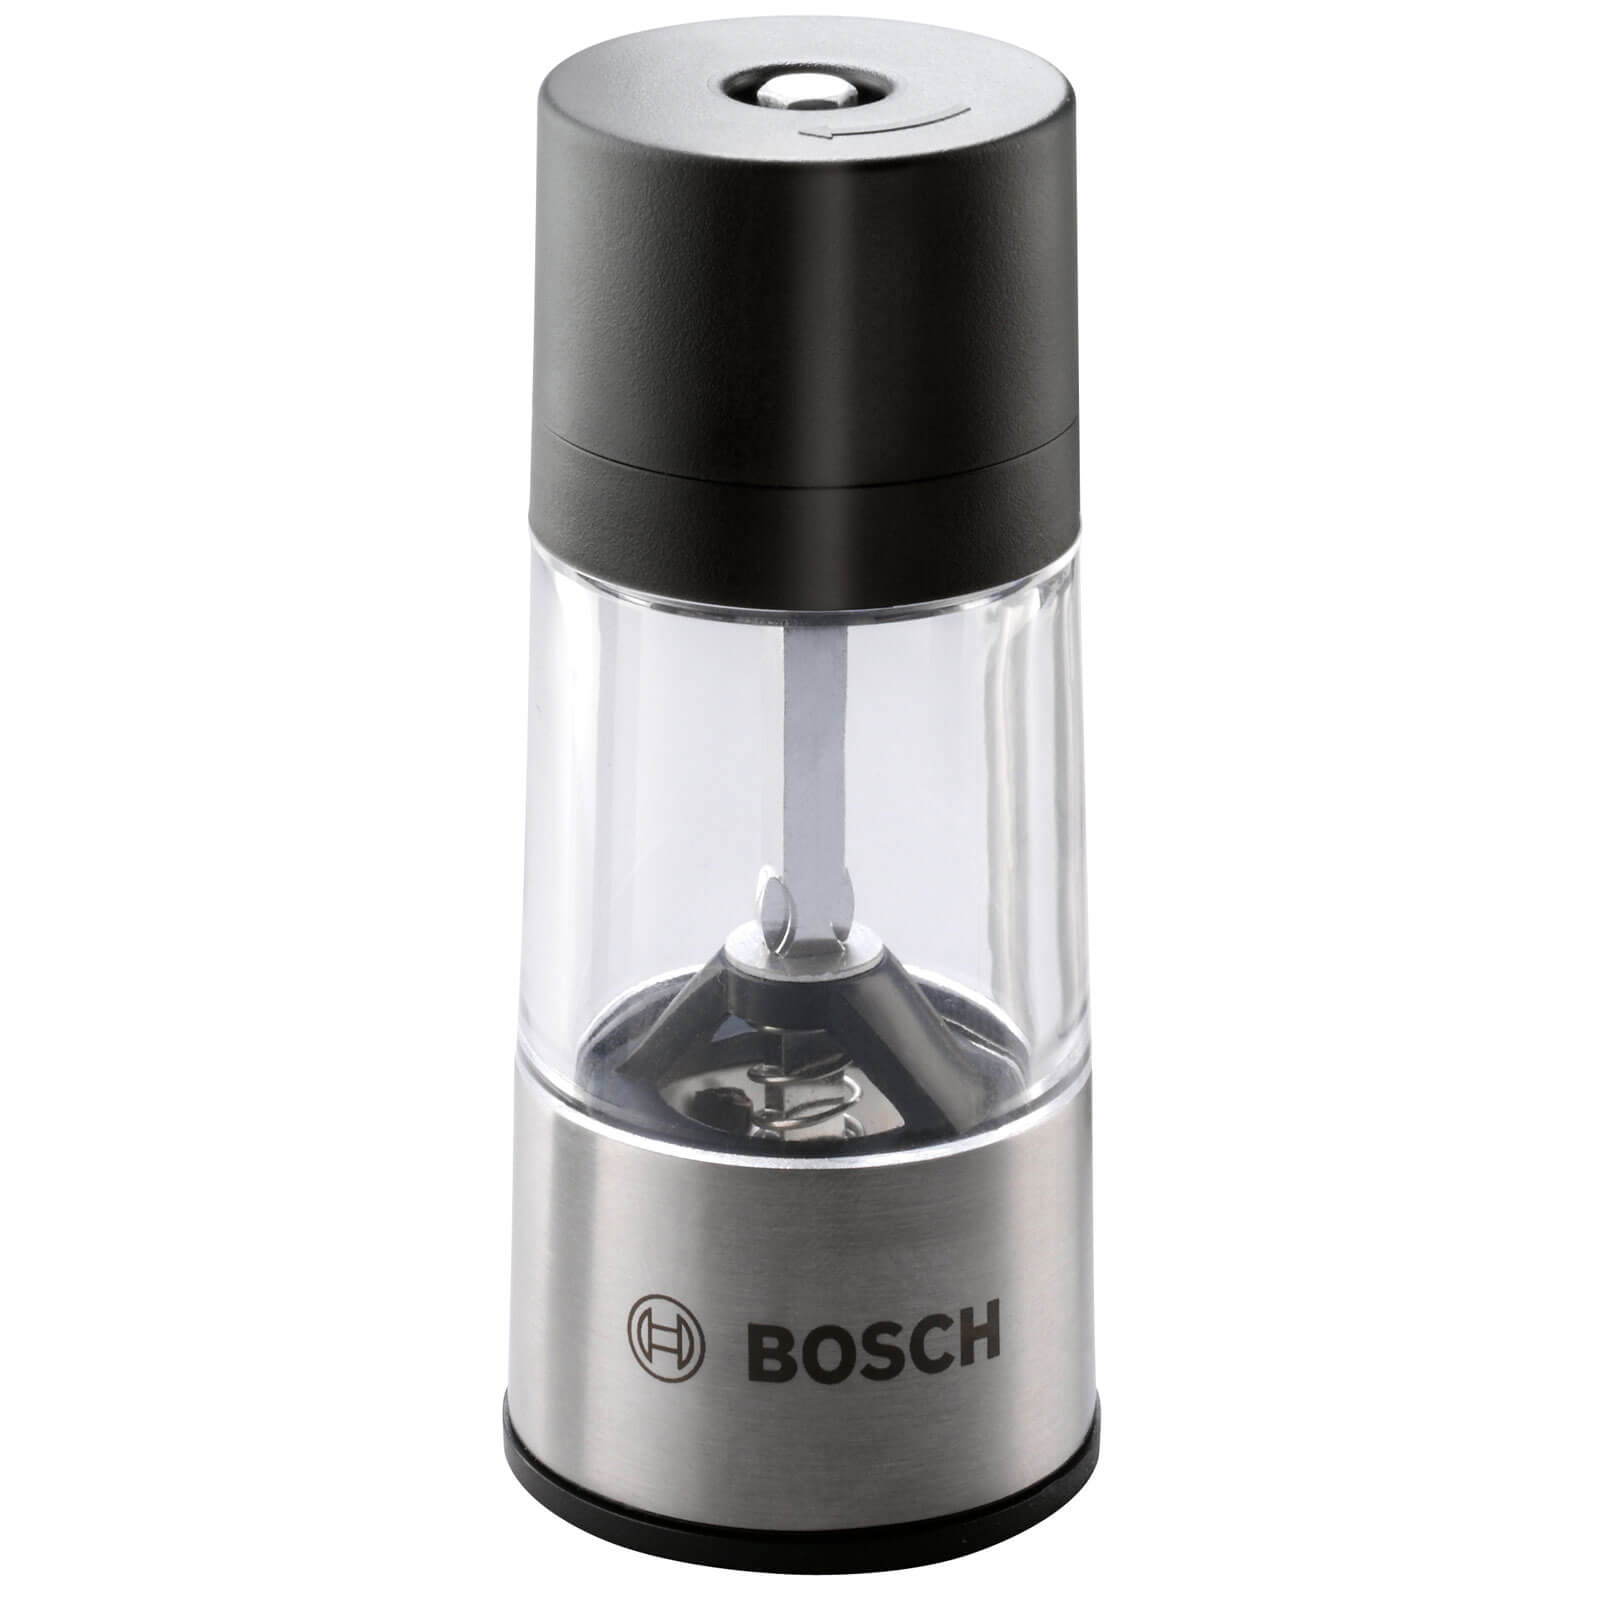 Photo of Bosch Ixo Bbq Spice Mill Attachment For Ixo Screwdrivers